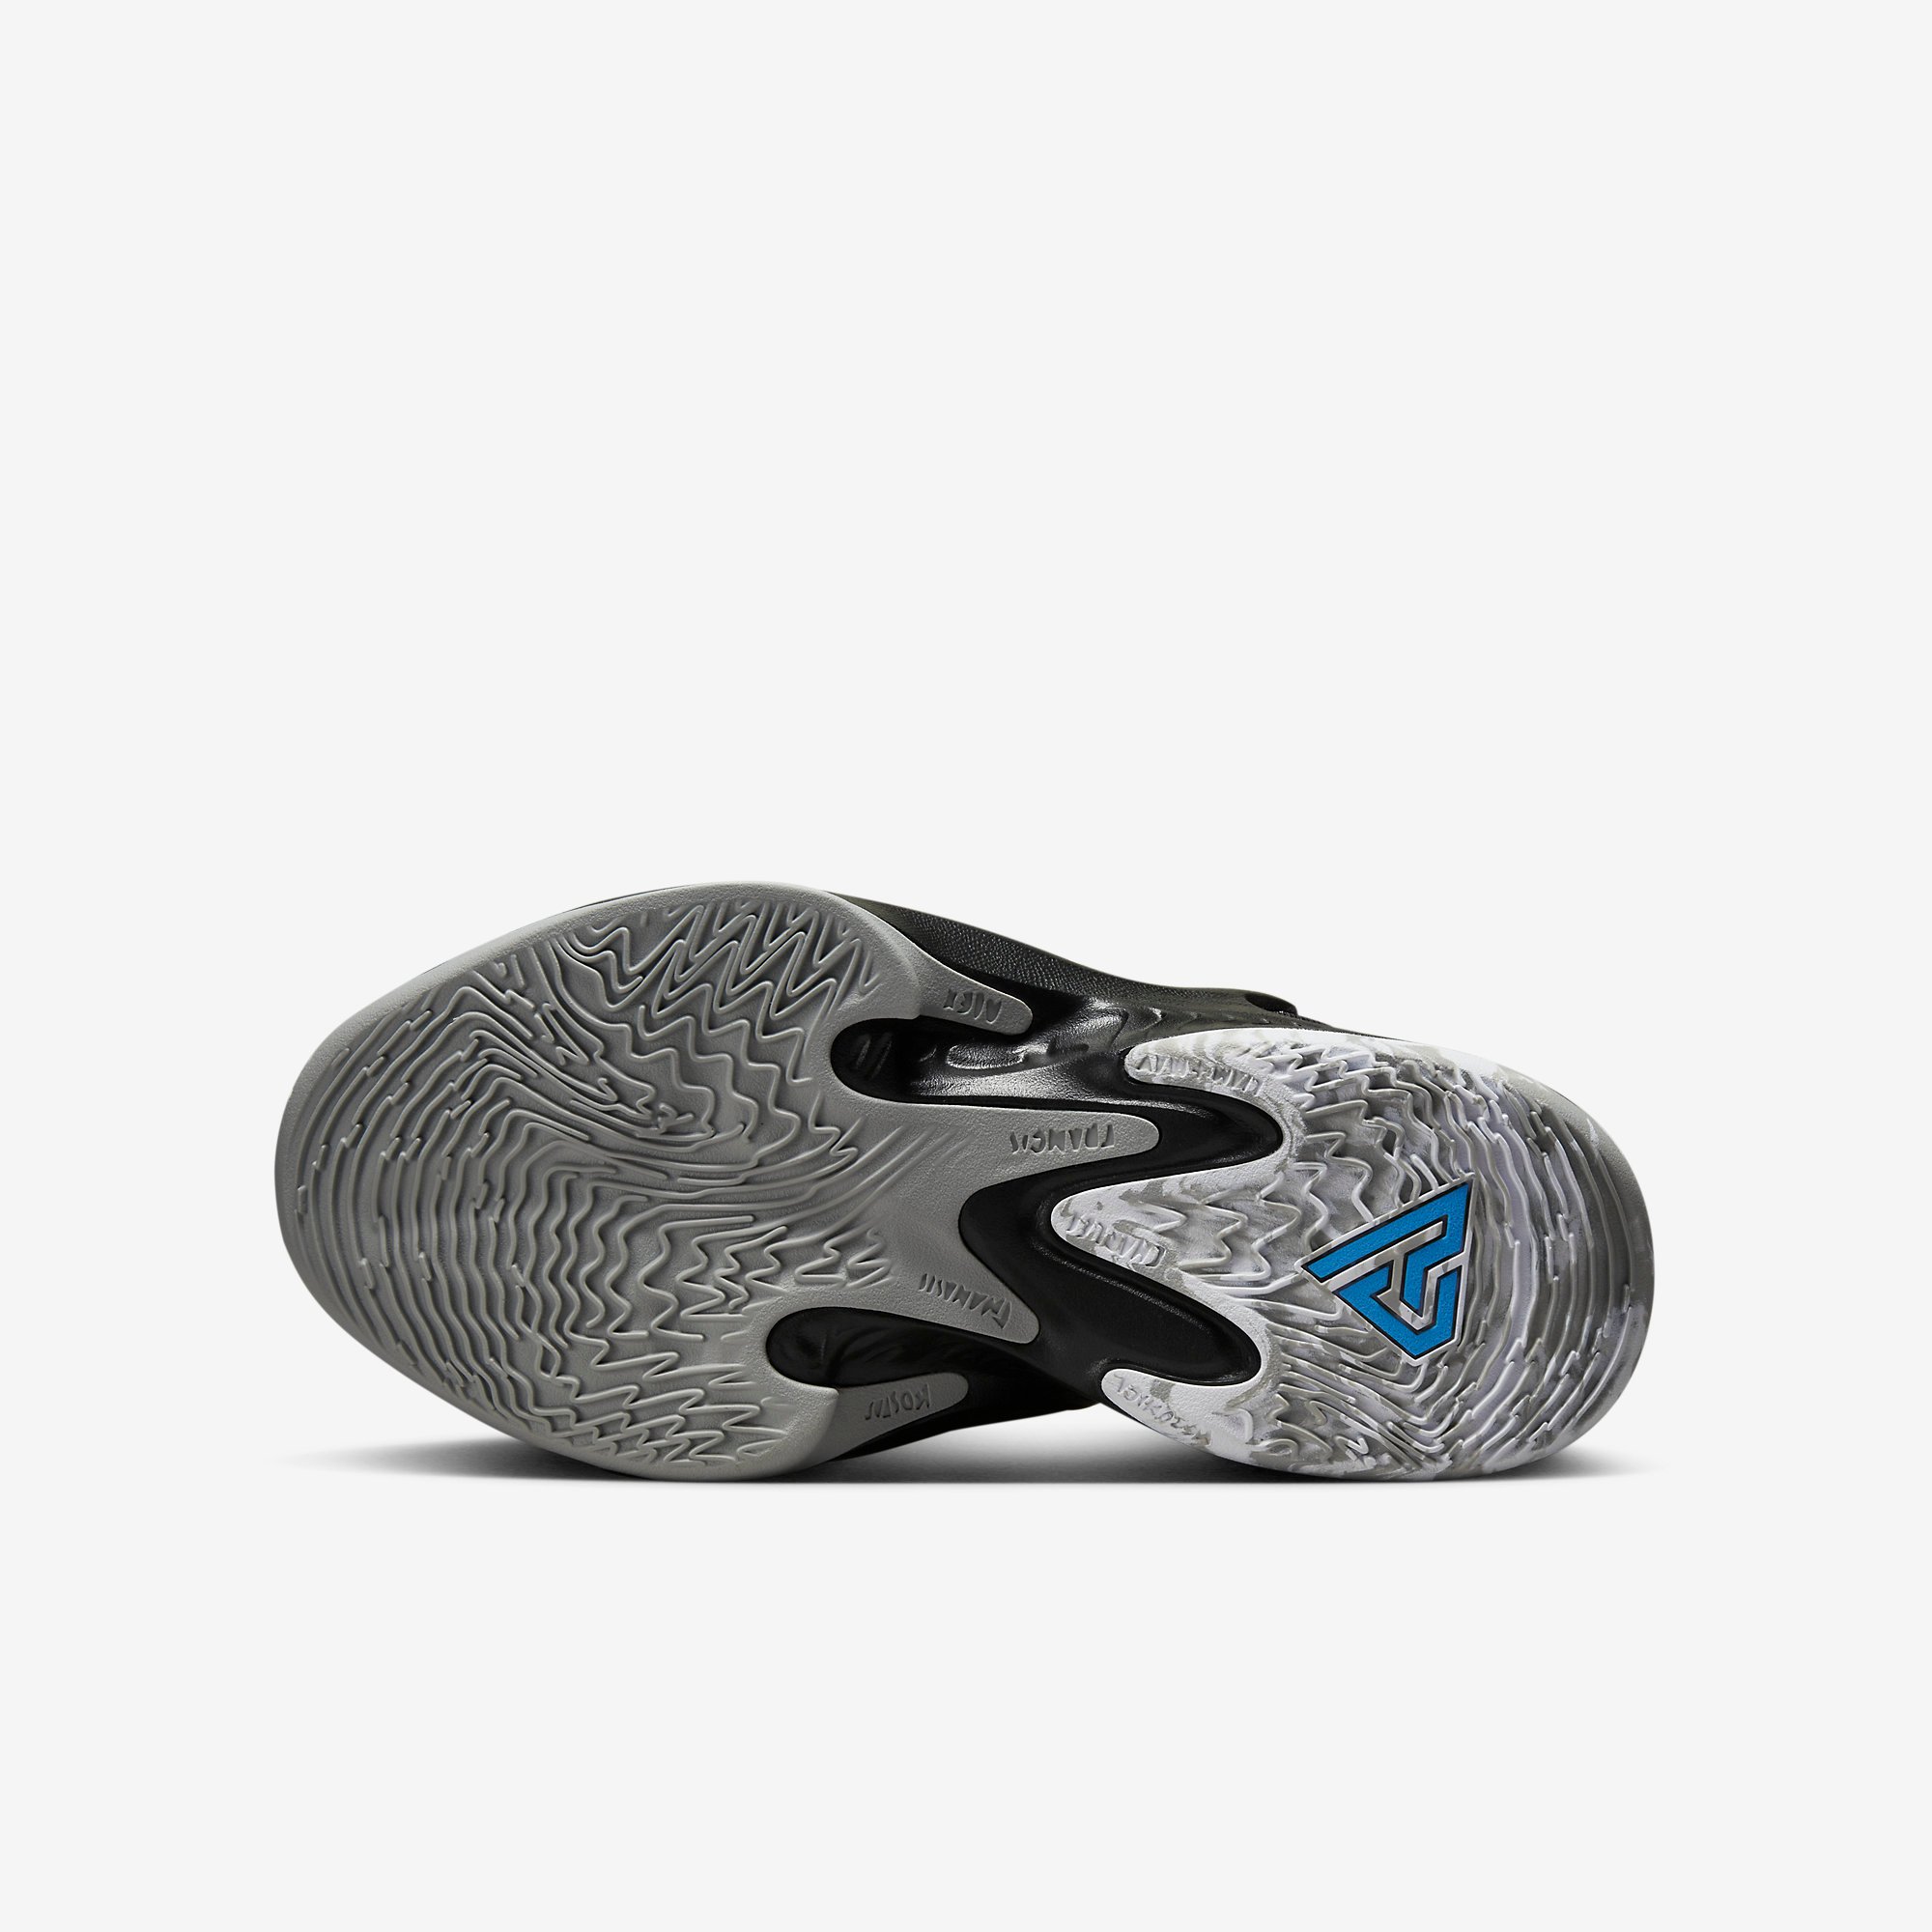 Nike Zoom Freak 4 “Light Smoke Grey” DJ6149-001